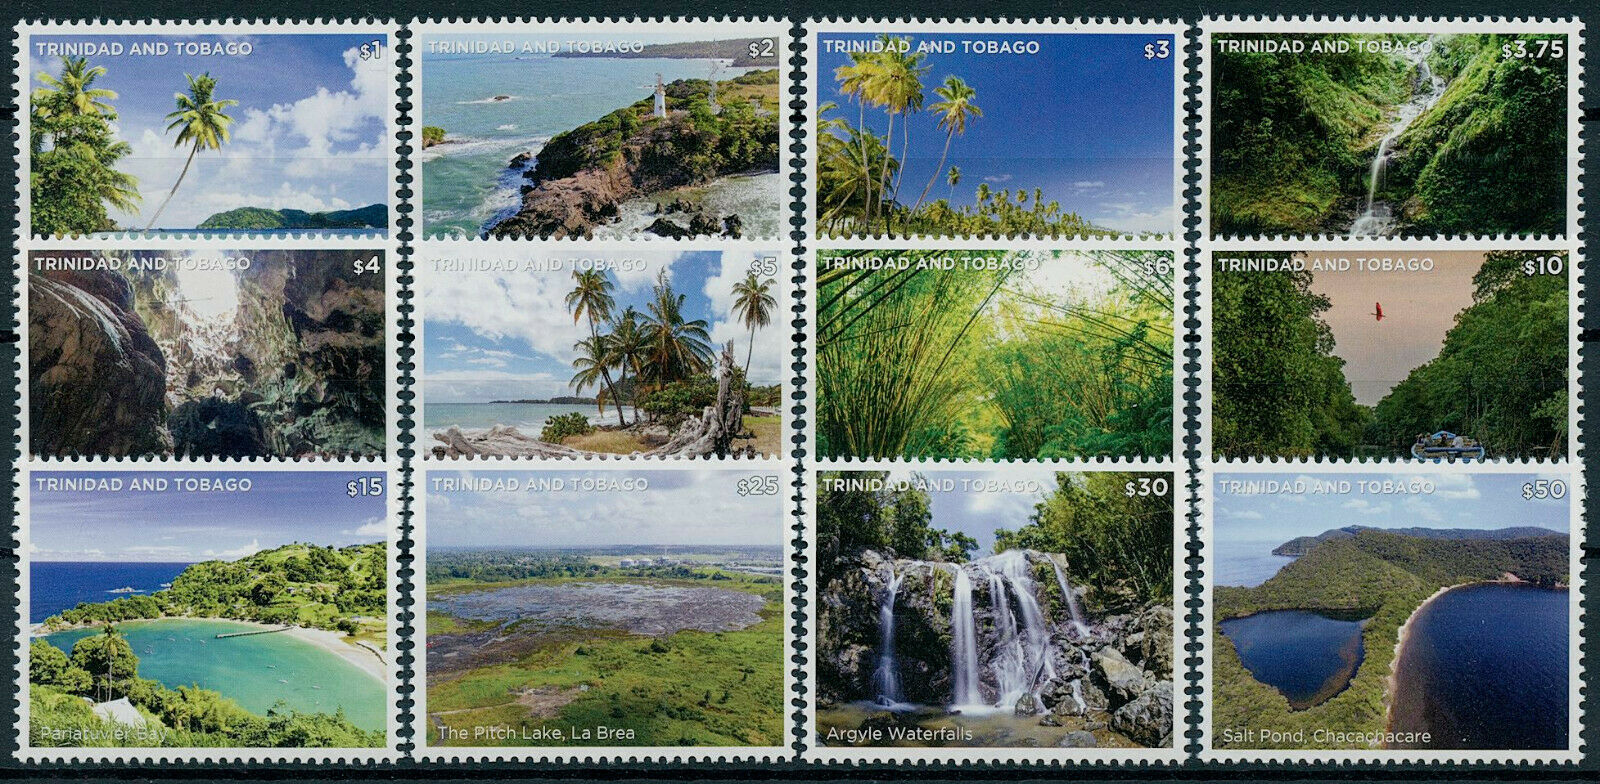 Trinidad & Tobago 2021 MNH Landscapes Stamps Scenic Views Definitives 12v Set